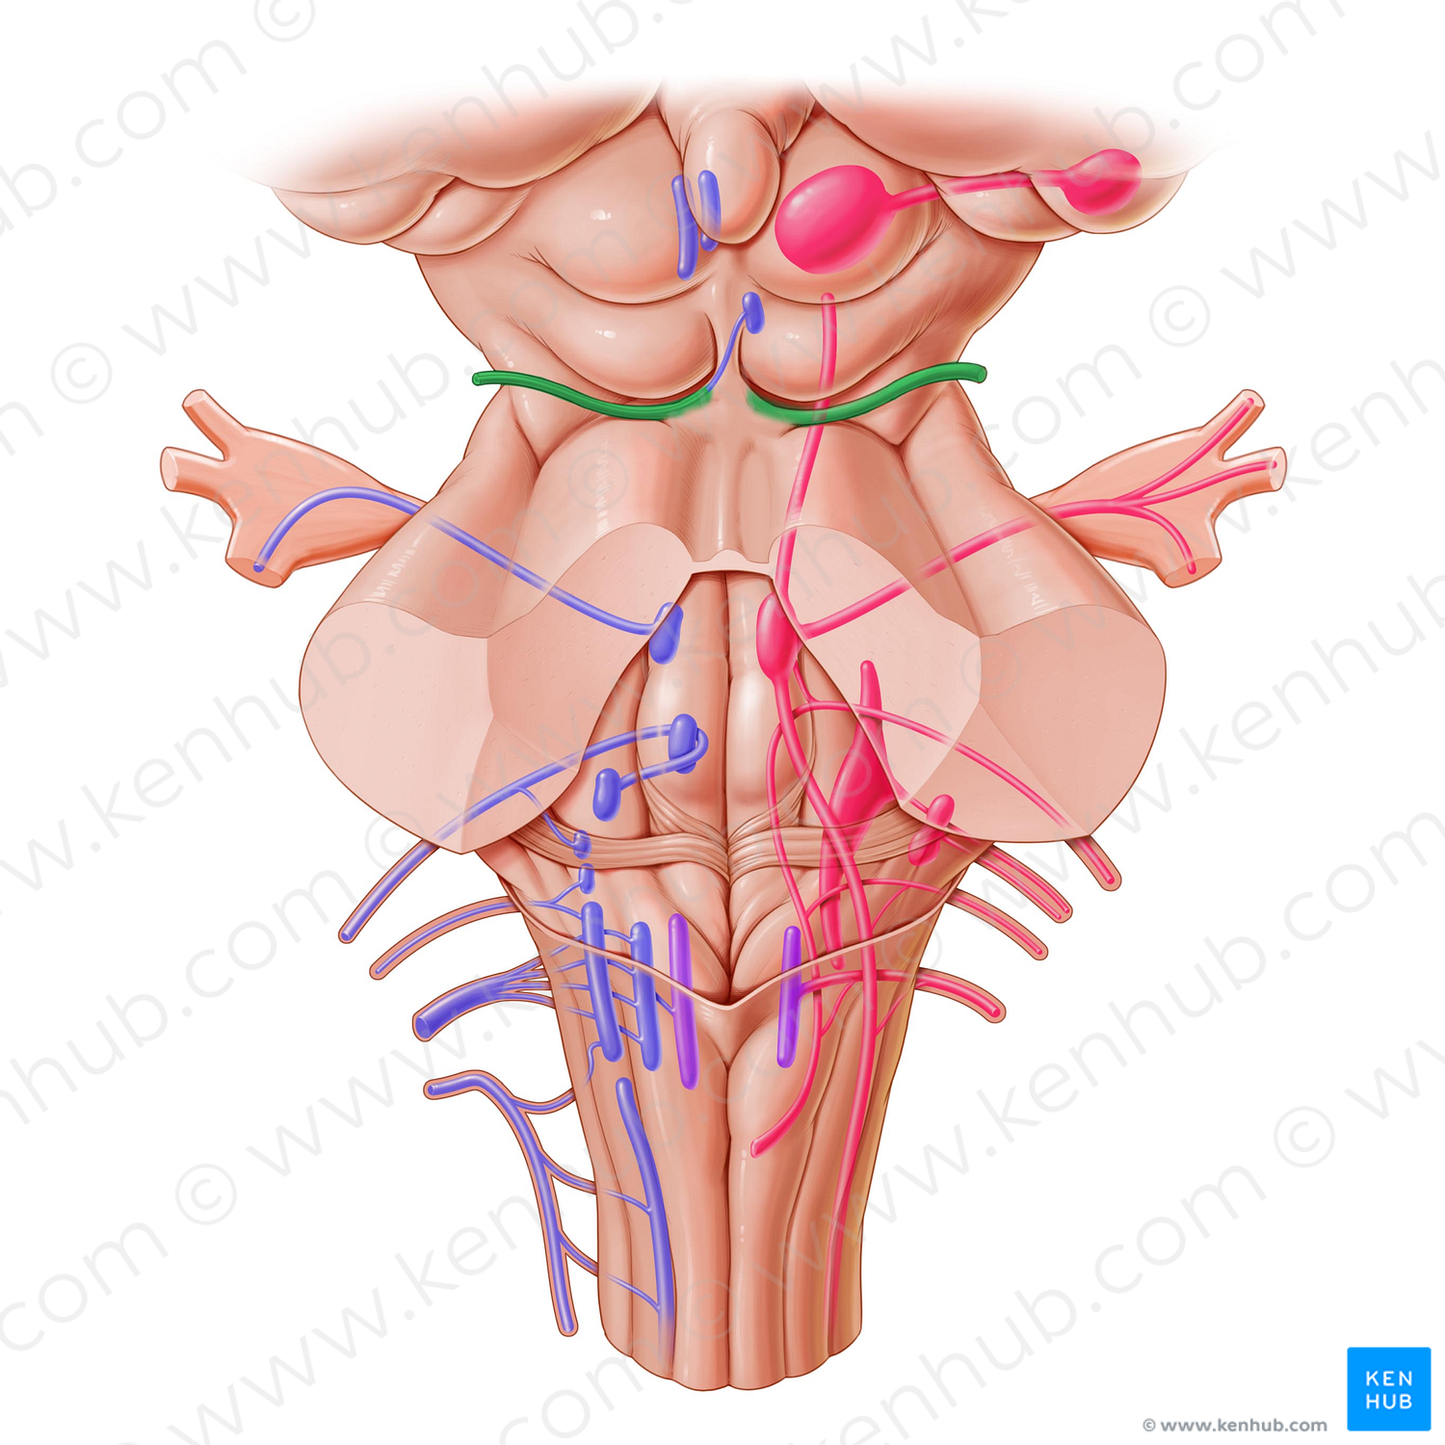 Trochlear nerve (#6843)